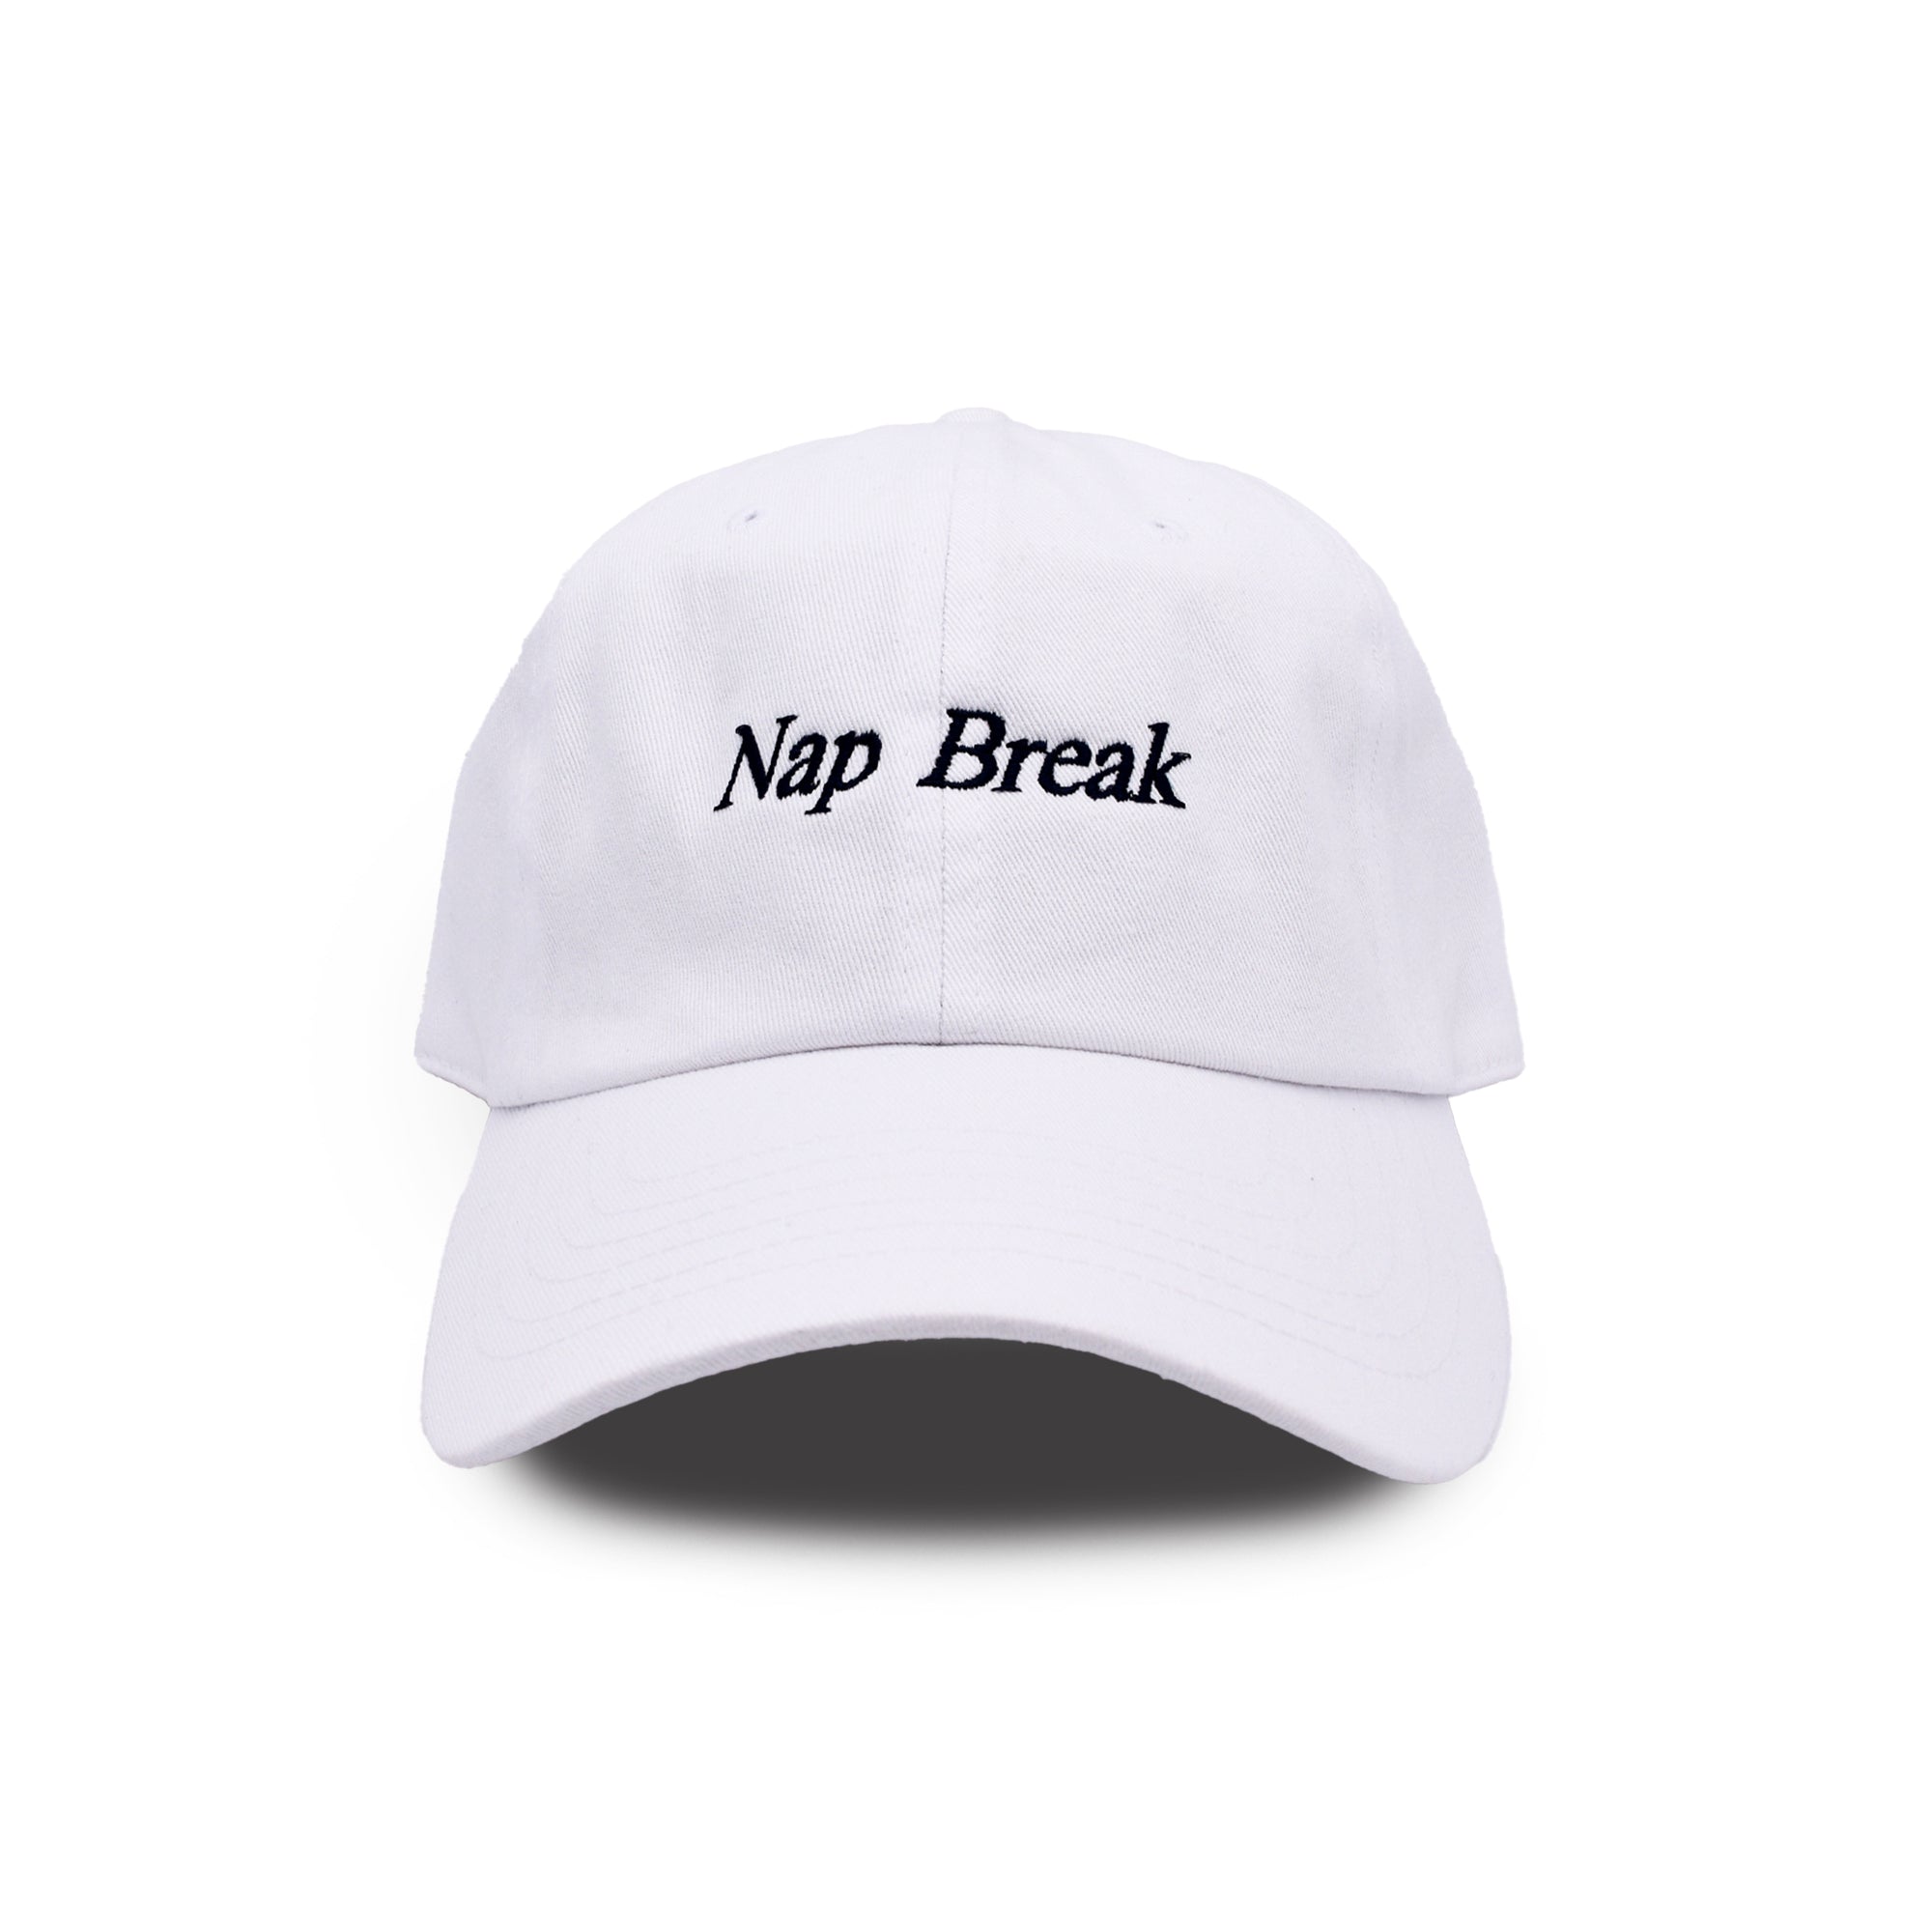 Nap Break